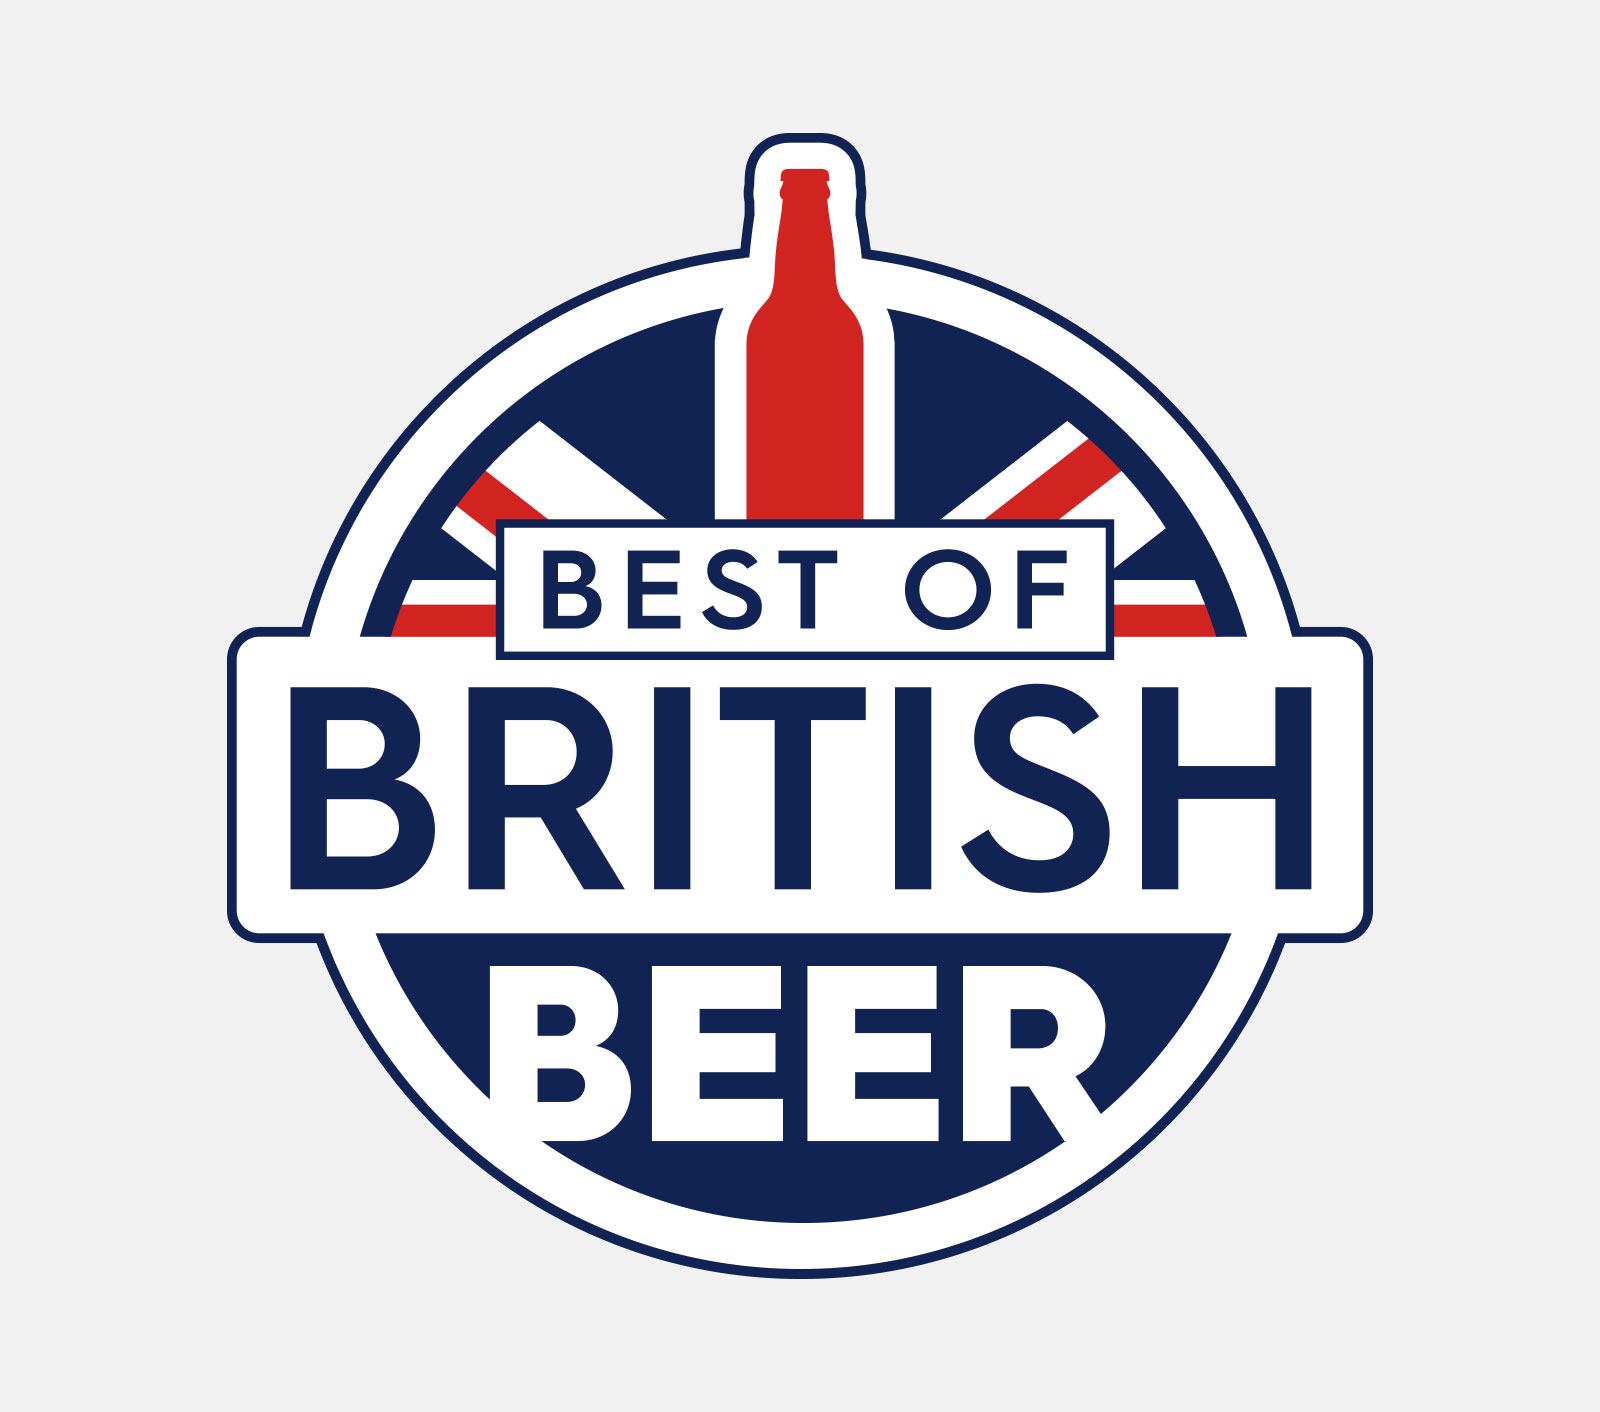 Best of British Beer Core Brand